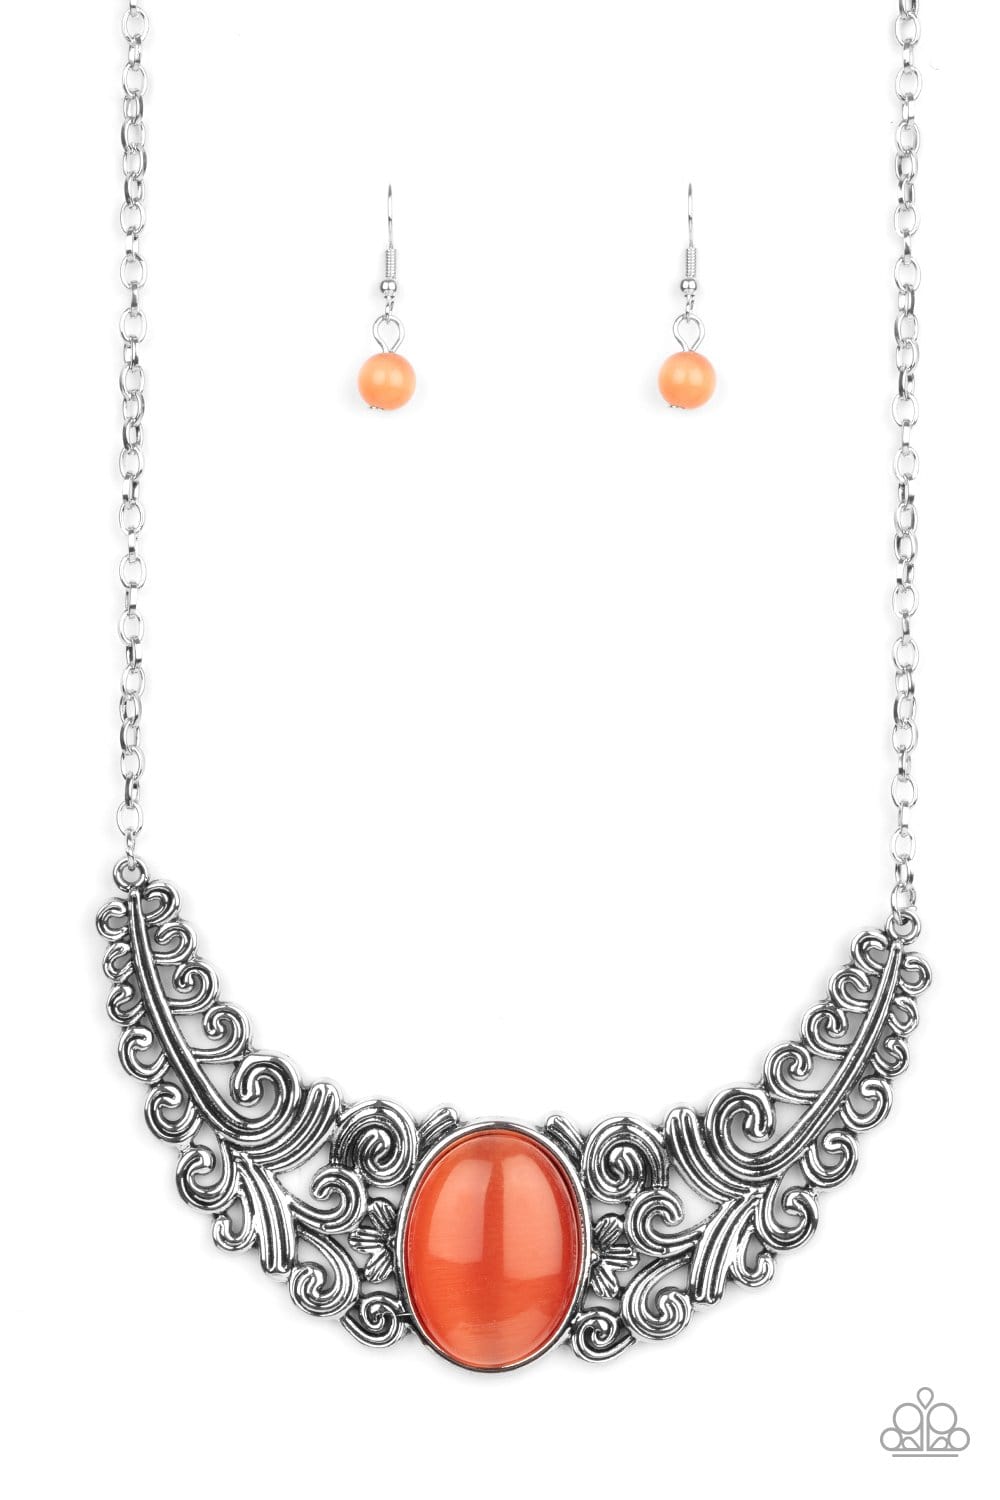 Buy Pretty in Pink Choker Necklace & Earrings Set Online in India | Zariin